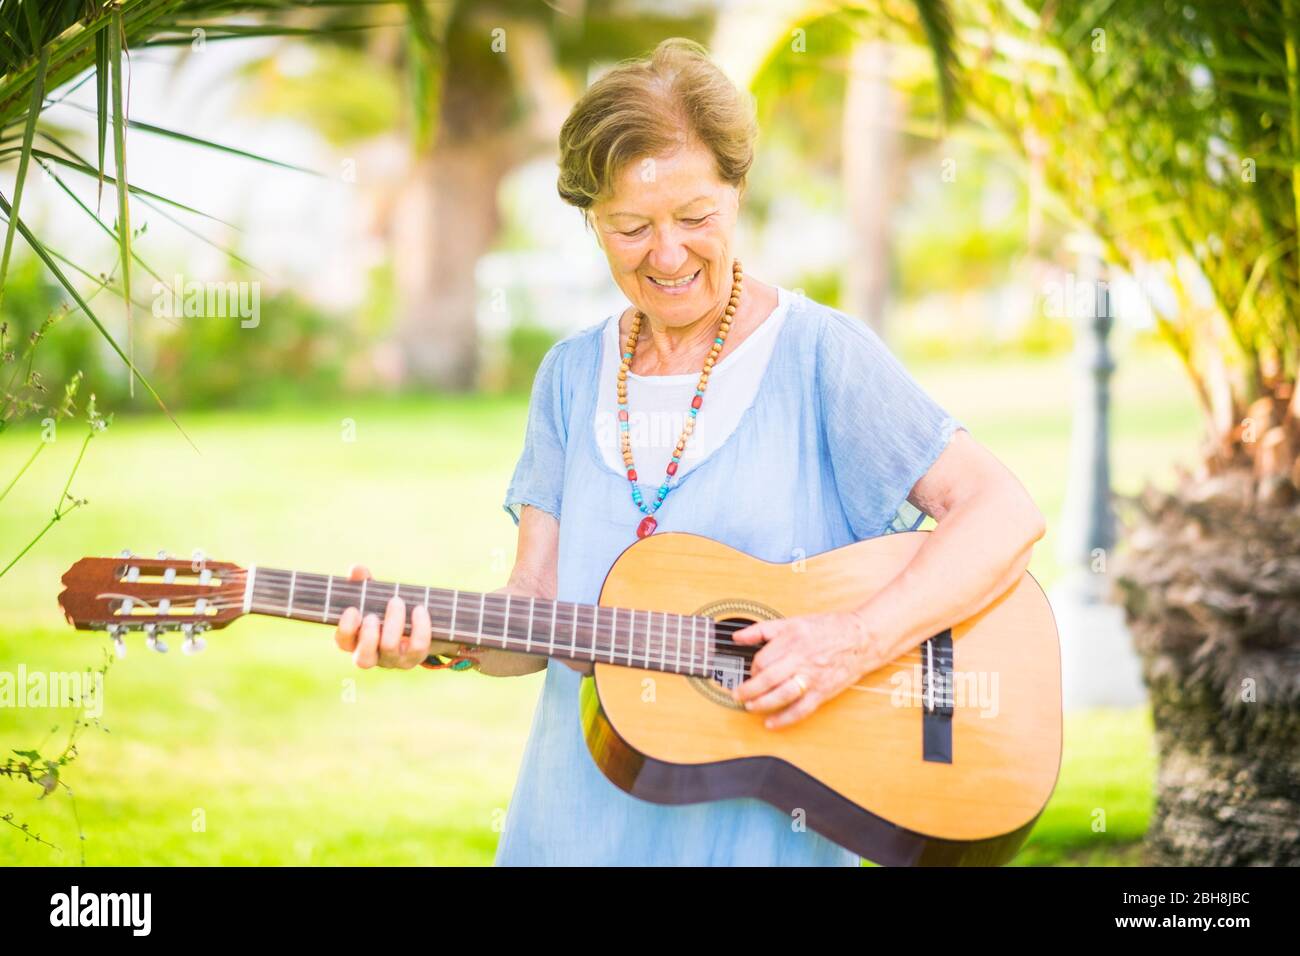 Fröhliche und glückliche alte ältere kaukasische Frau lächelnd und Spaß beim Spielen einer Gitarre und Dong-Musik im Outdoor Park Freizeitaktivitäten - Rentner glückliche Menschen mit Interessen genießen neues Leben Stockfoto